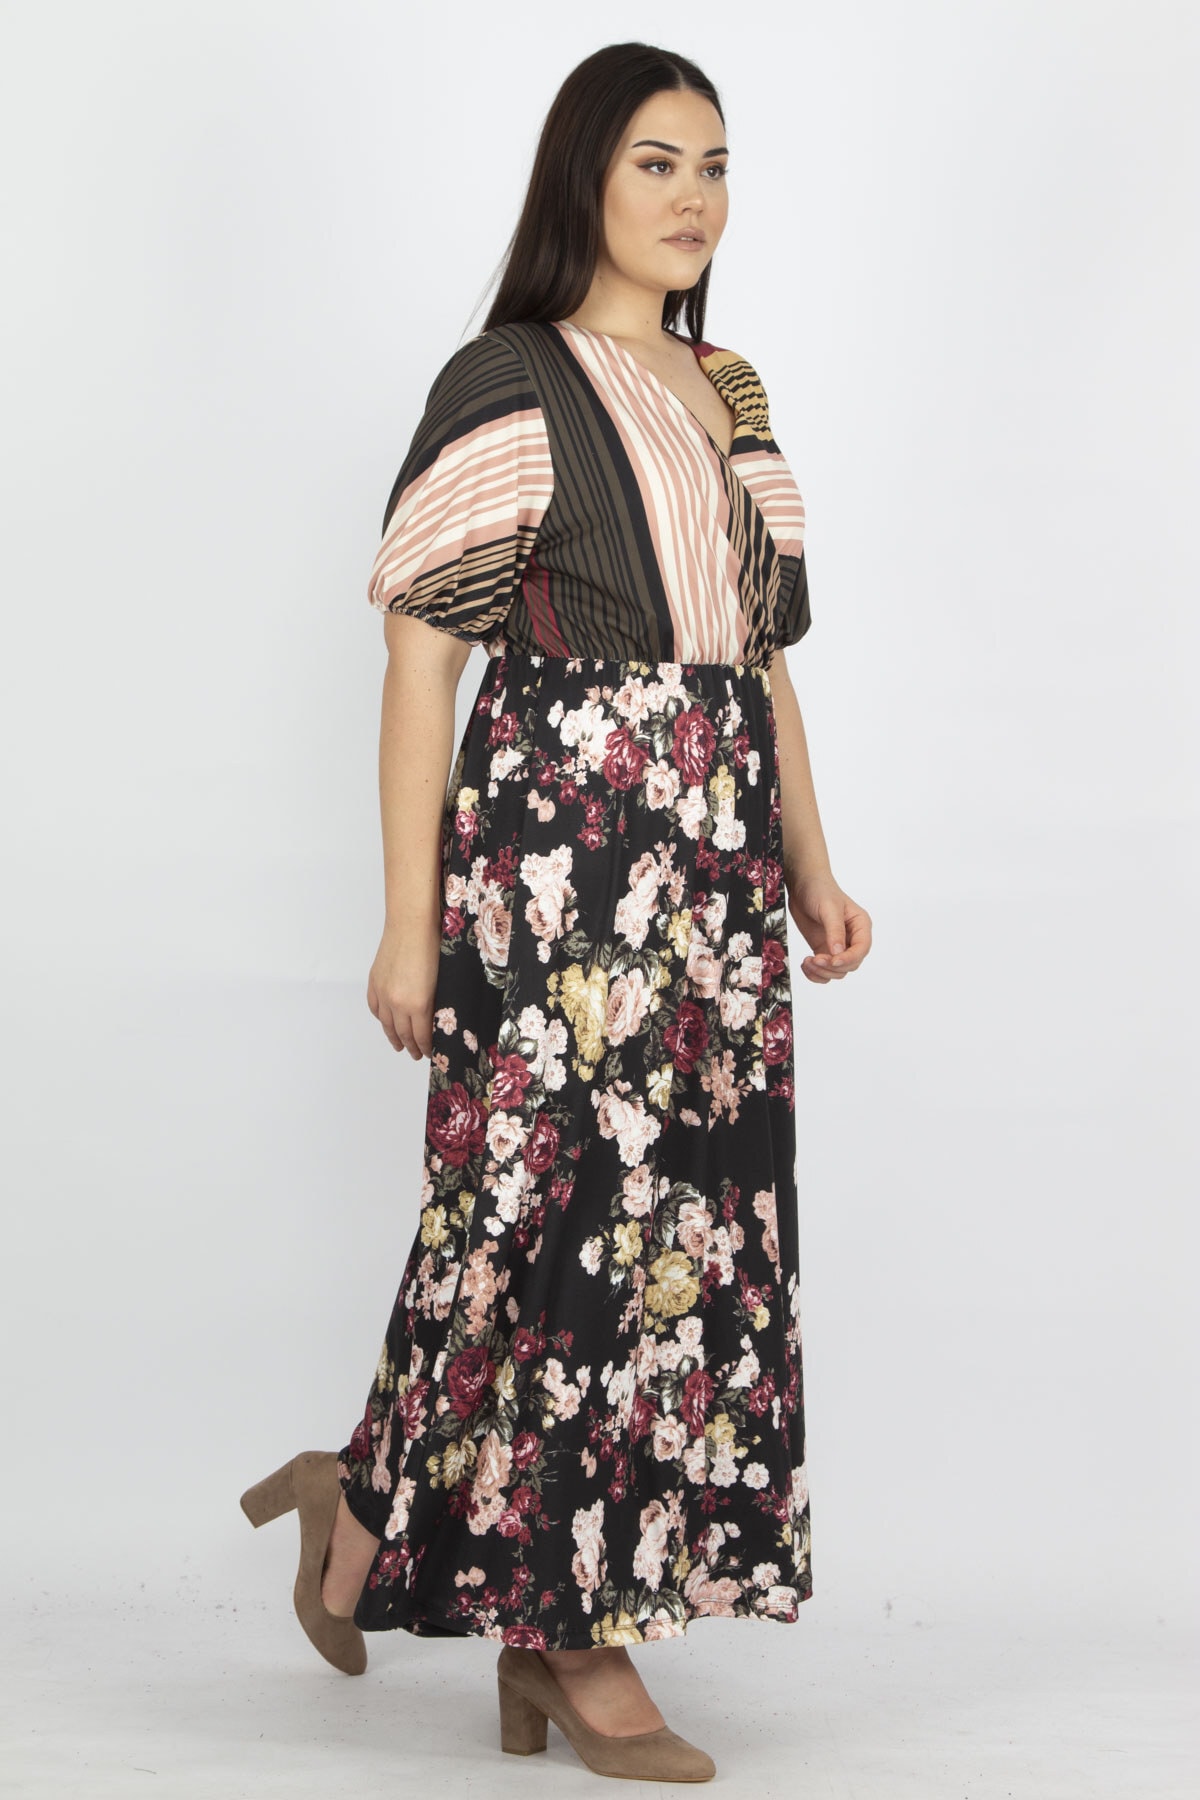 Şans Women's Plus Size Colorful Patchwork Patterned Wrap Collar Dress